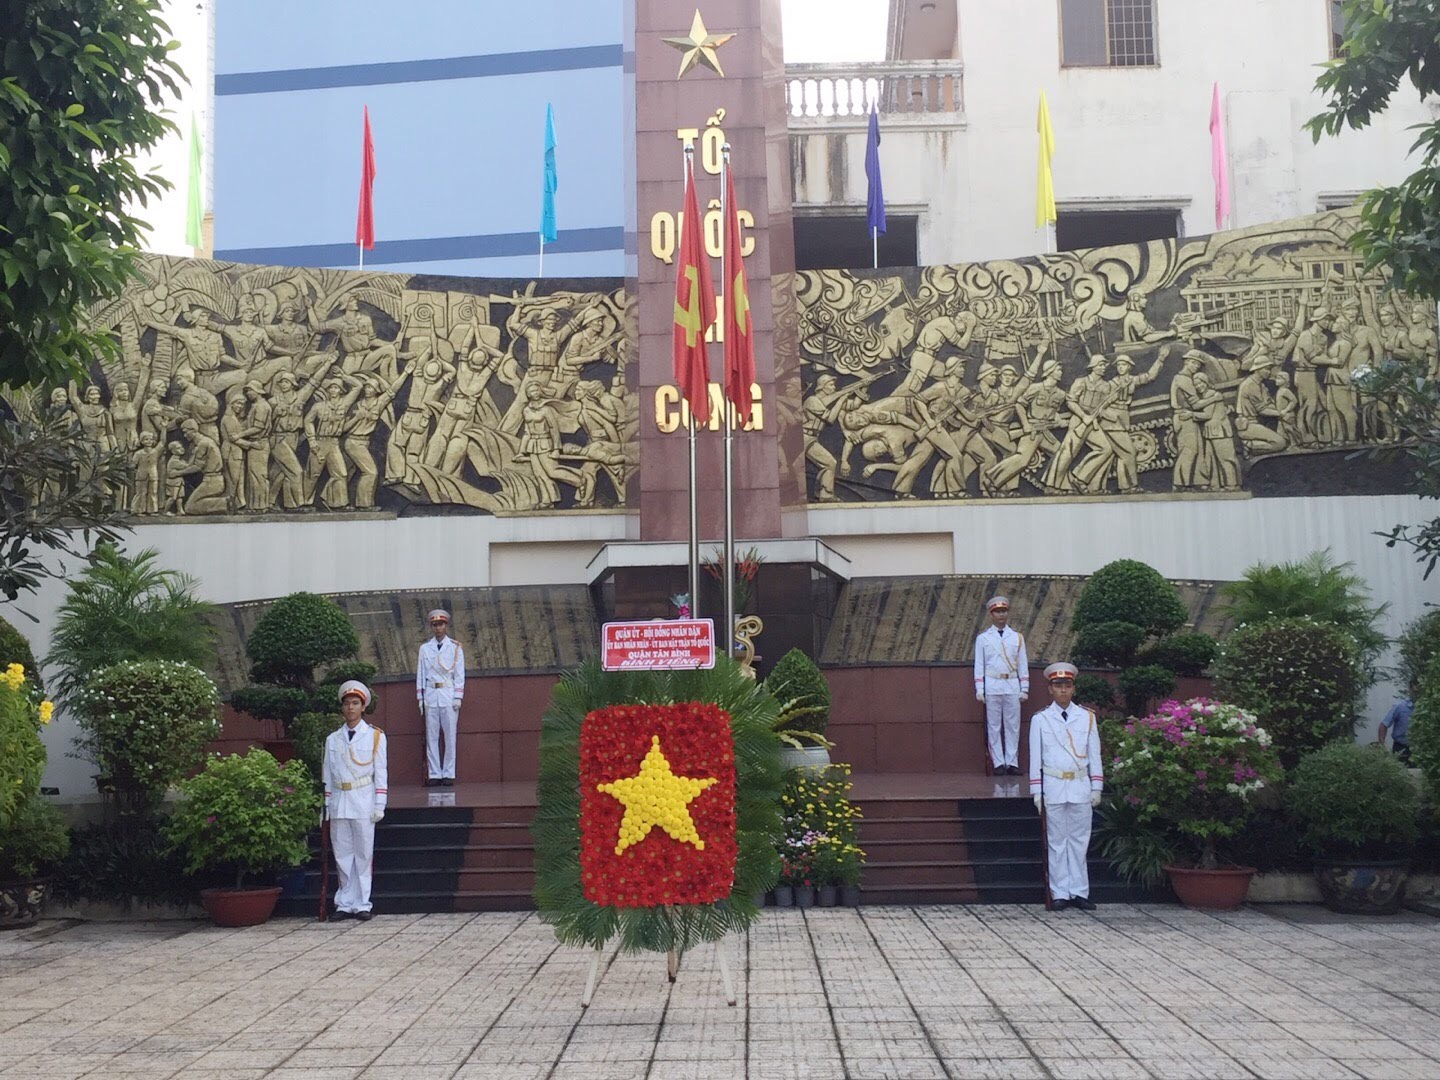 Chi cục Thi hành án dân sự quận Tân Bình tham gia hoạt động kỷ niệm 75 năm ngày thành lập Quân đội Nhân dân Việt Nam (22/12/1944-22/12/2019)